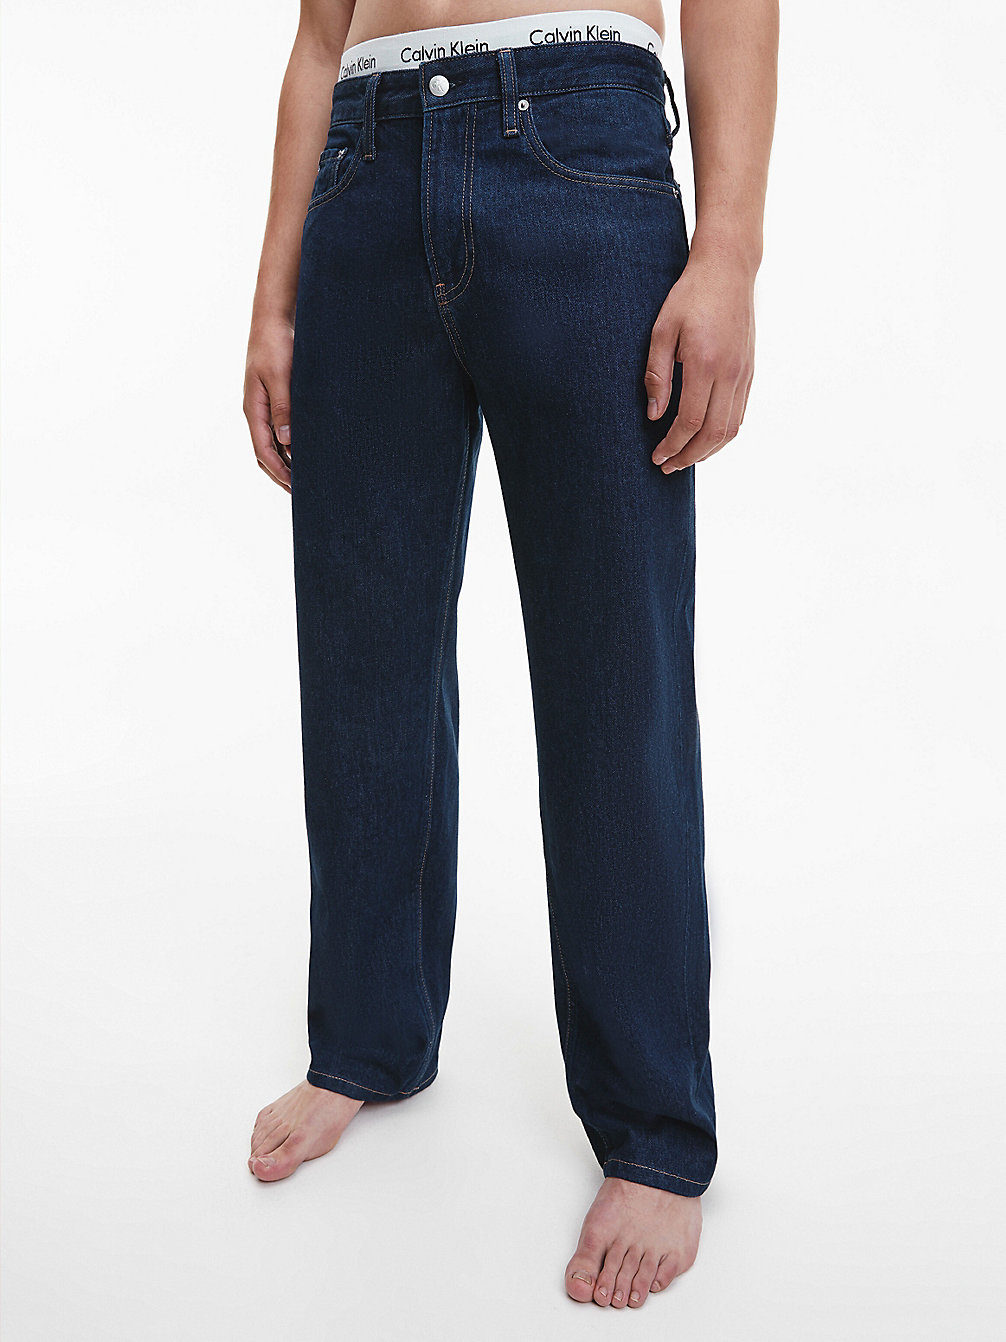 DENIM RINSE > 90's Straight Jeans > undefined men - Calvin Klein